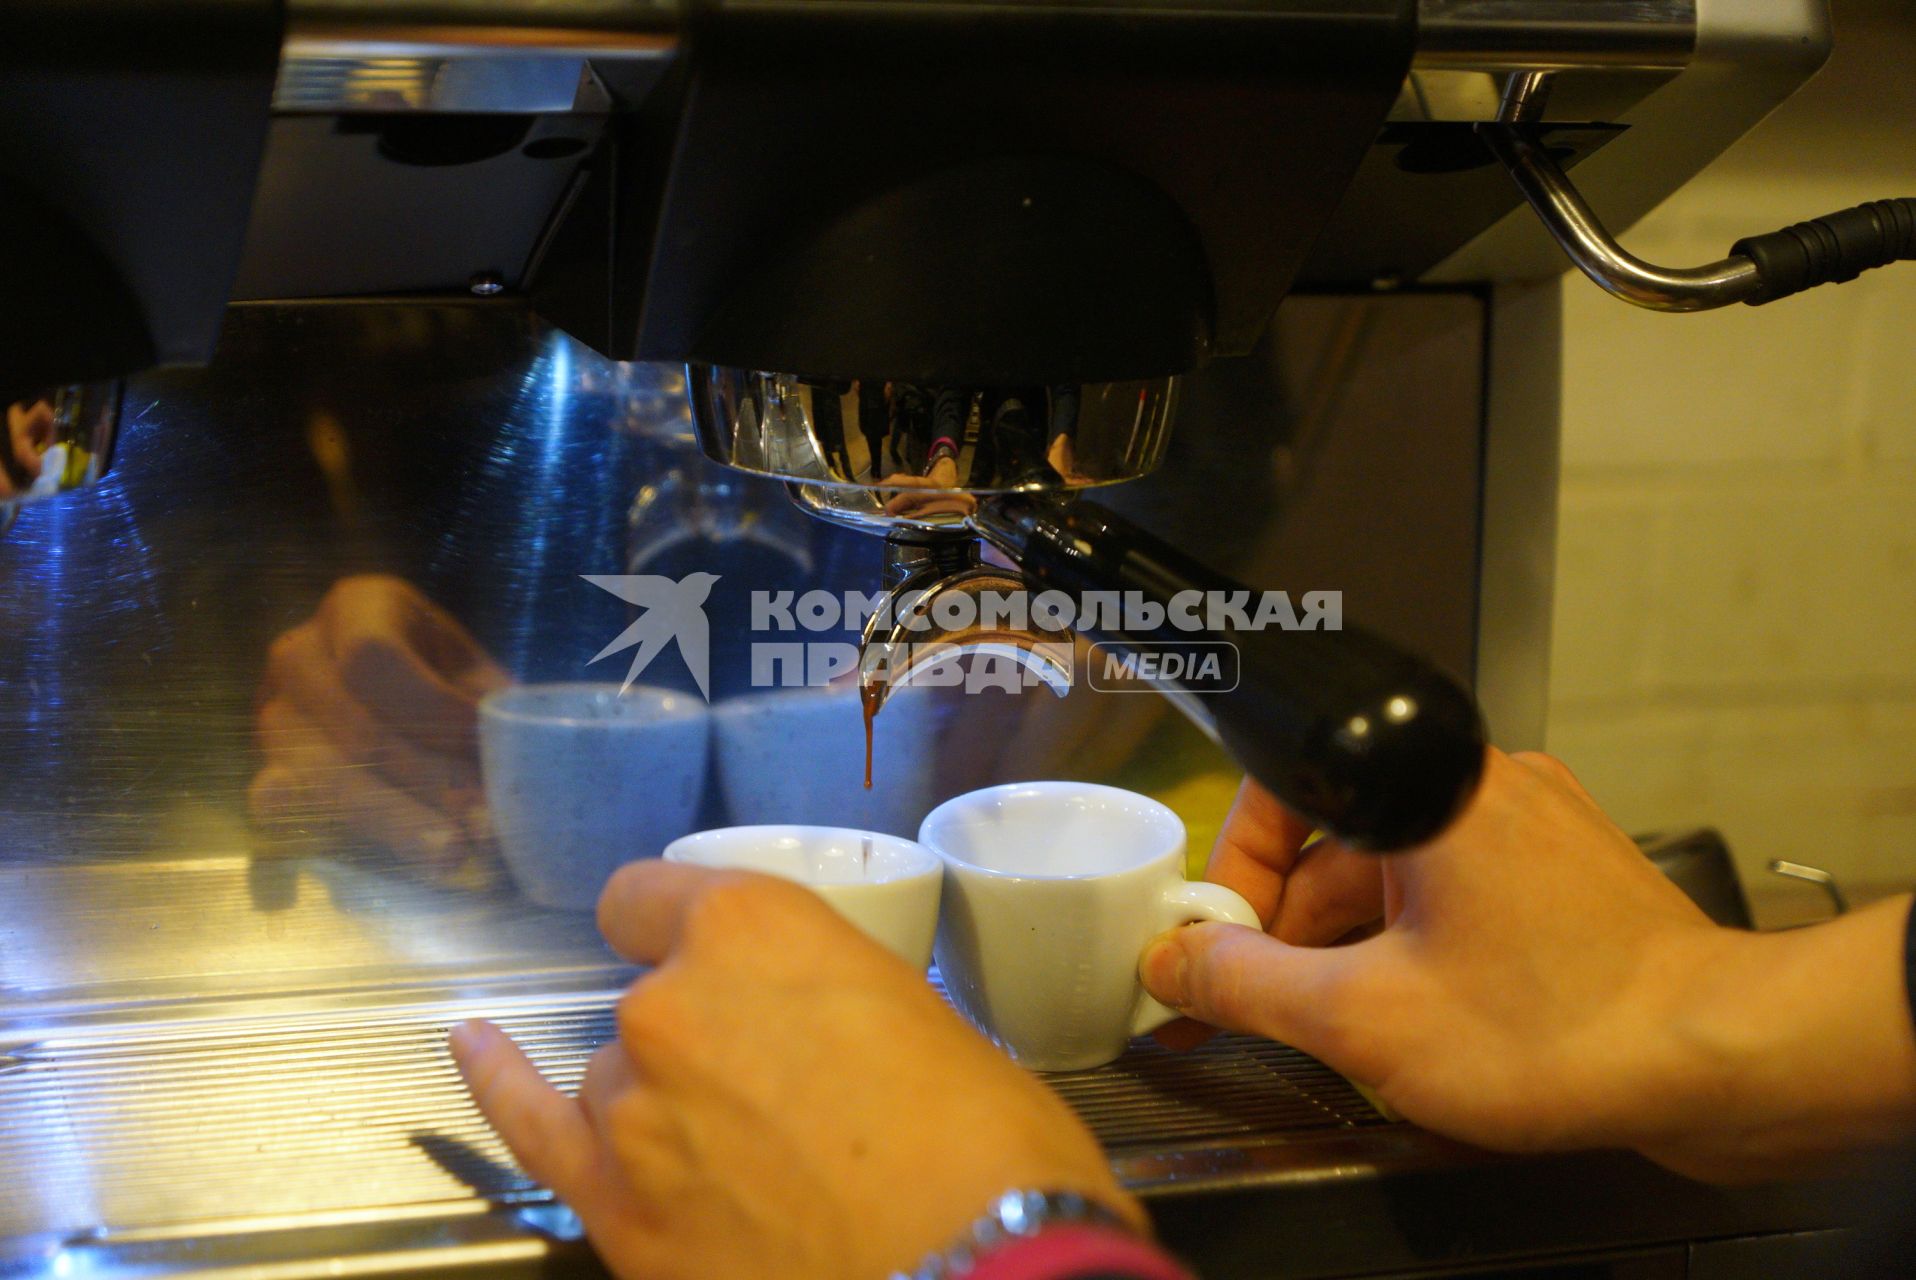 Екатеринбург. Бариста готовит зерновой кофе в одной из кофеен города